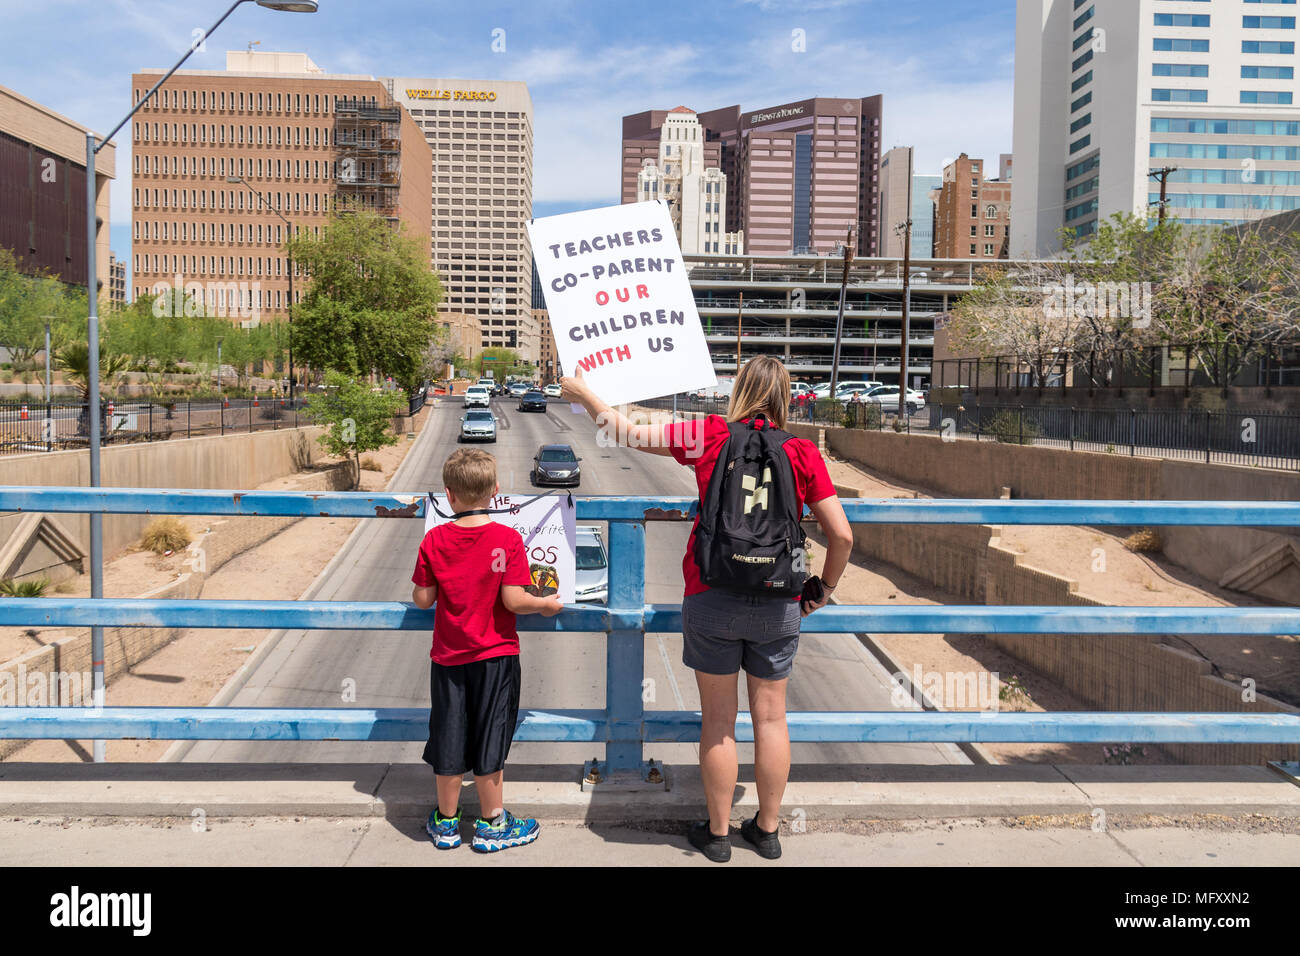 Phoenix, USA, 26 avril 2018, le n° RedForEd Co-Parent Mars - pour les enseignants nos enfants avec nous. Credit : Michelle Jones - Arizona/Alamy Live News. Banque D'Images